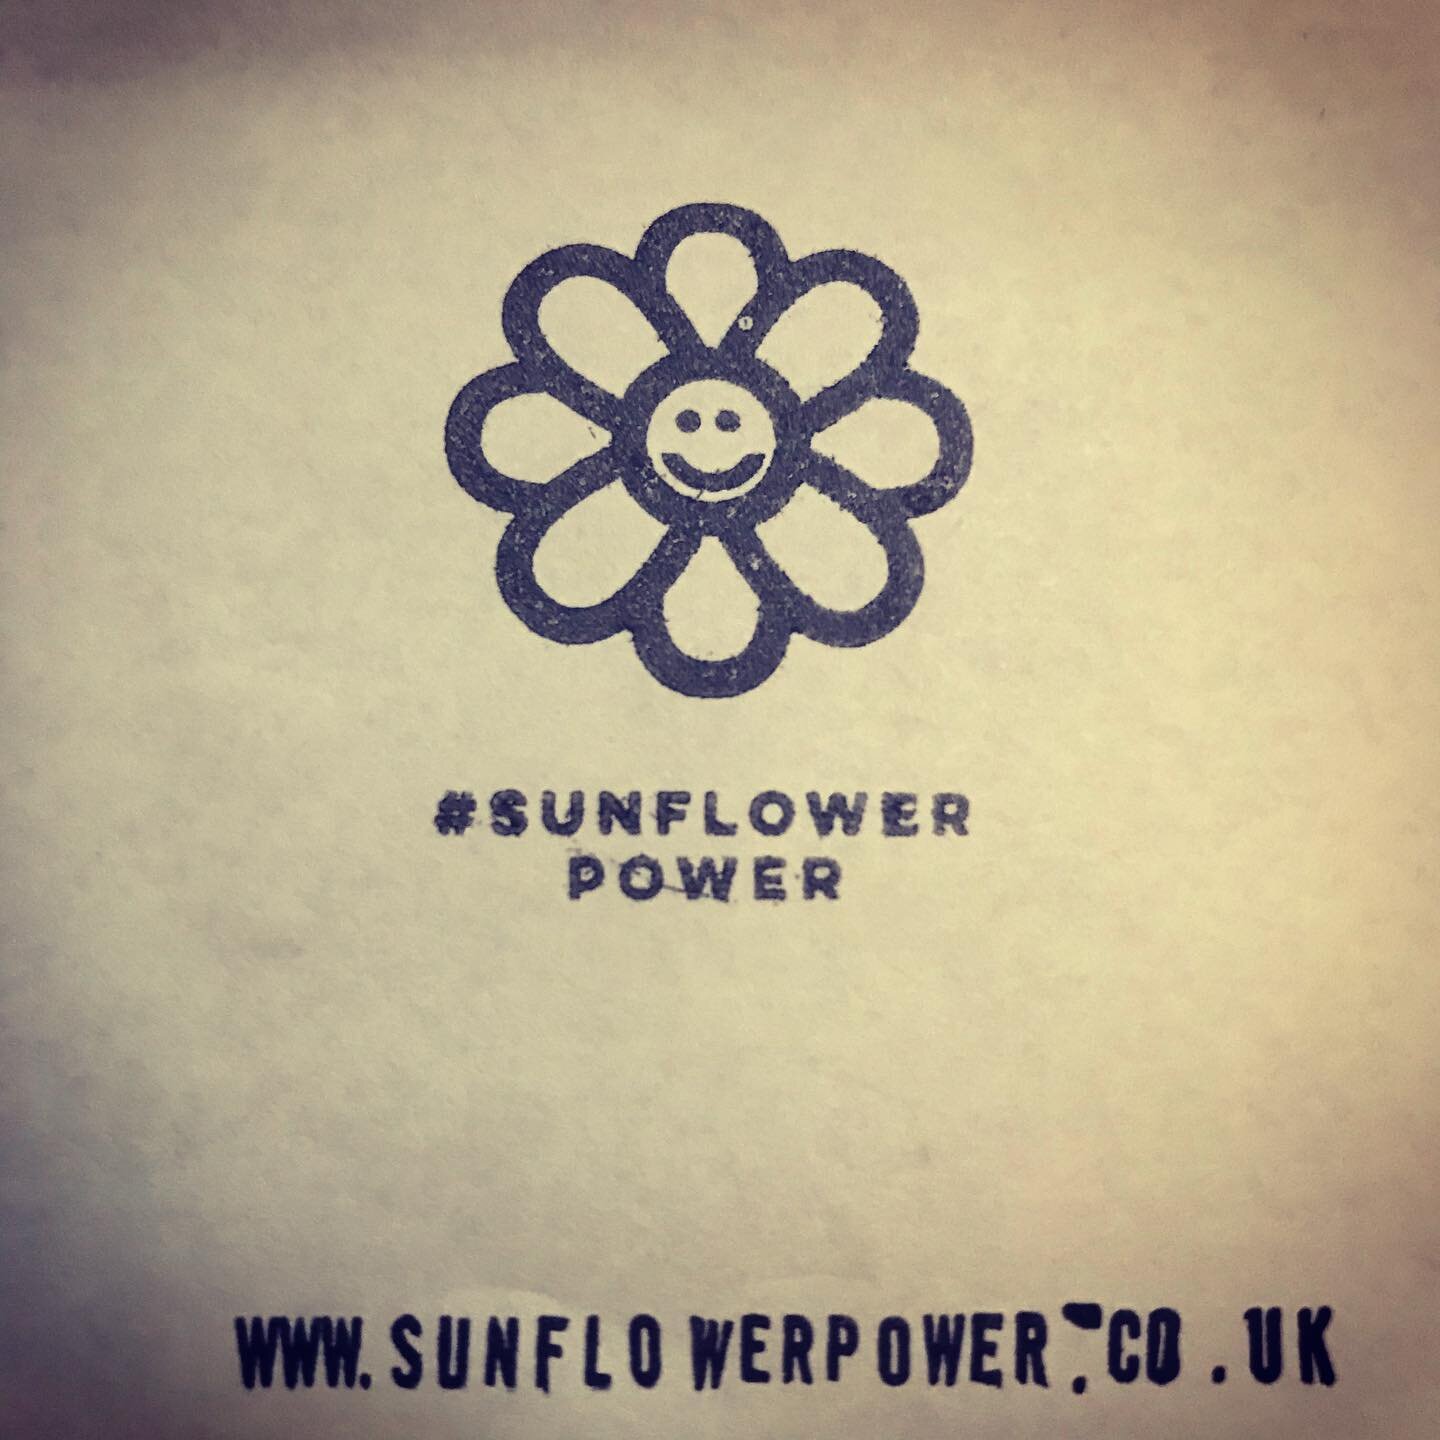 #ClearedForTakeOff @sunflowerpower2.0 #Sunflowerpower